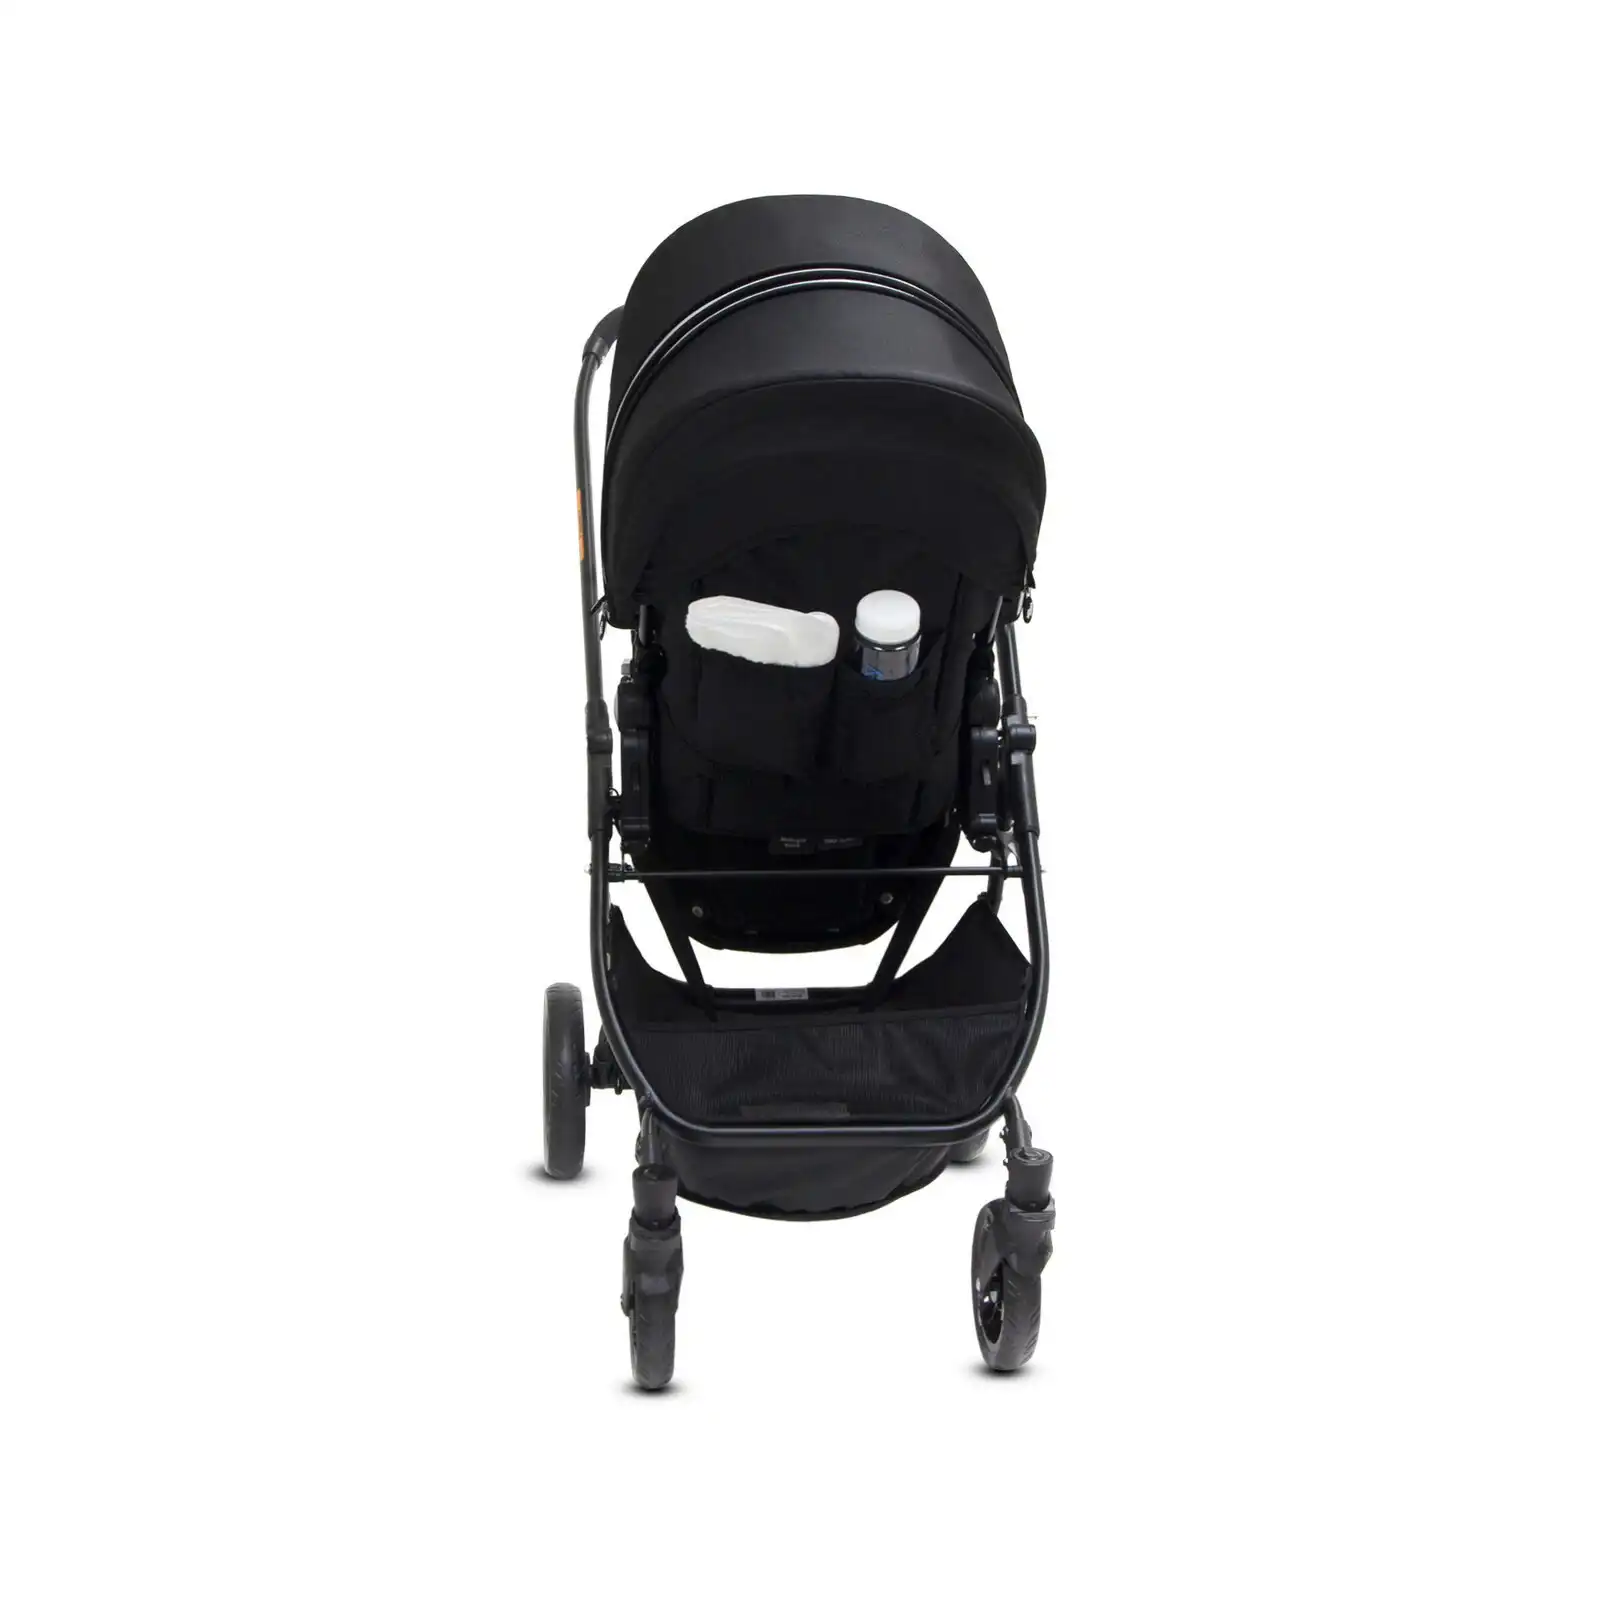 Valco Snap Ultra P Pram/Stroller Foldable/Ergo-Pivot Seat for Baby/Infant Black